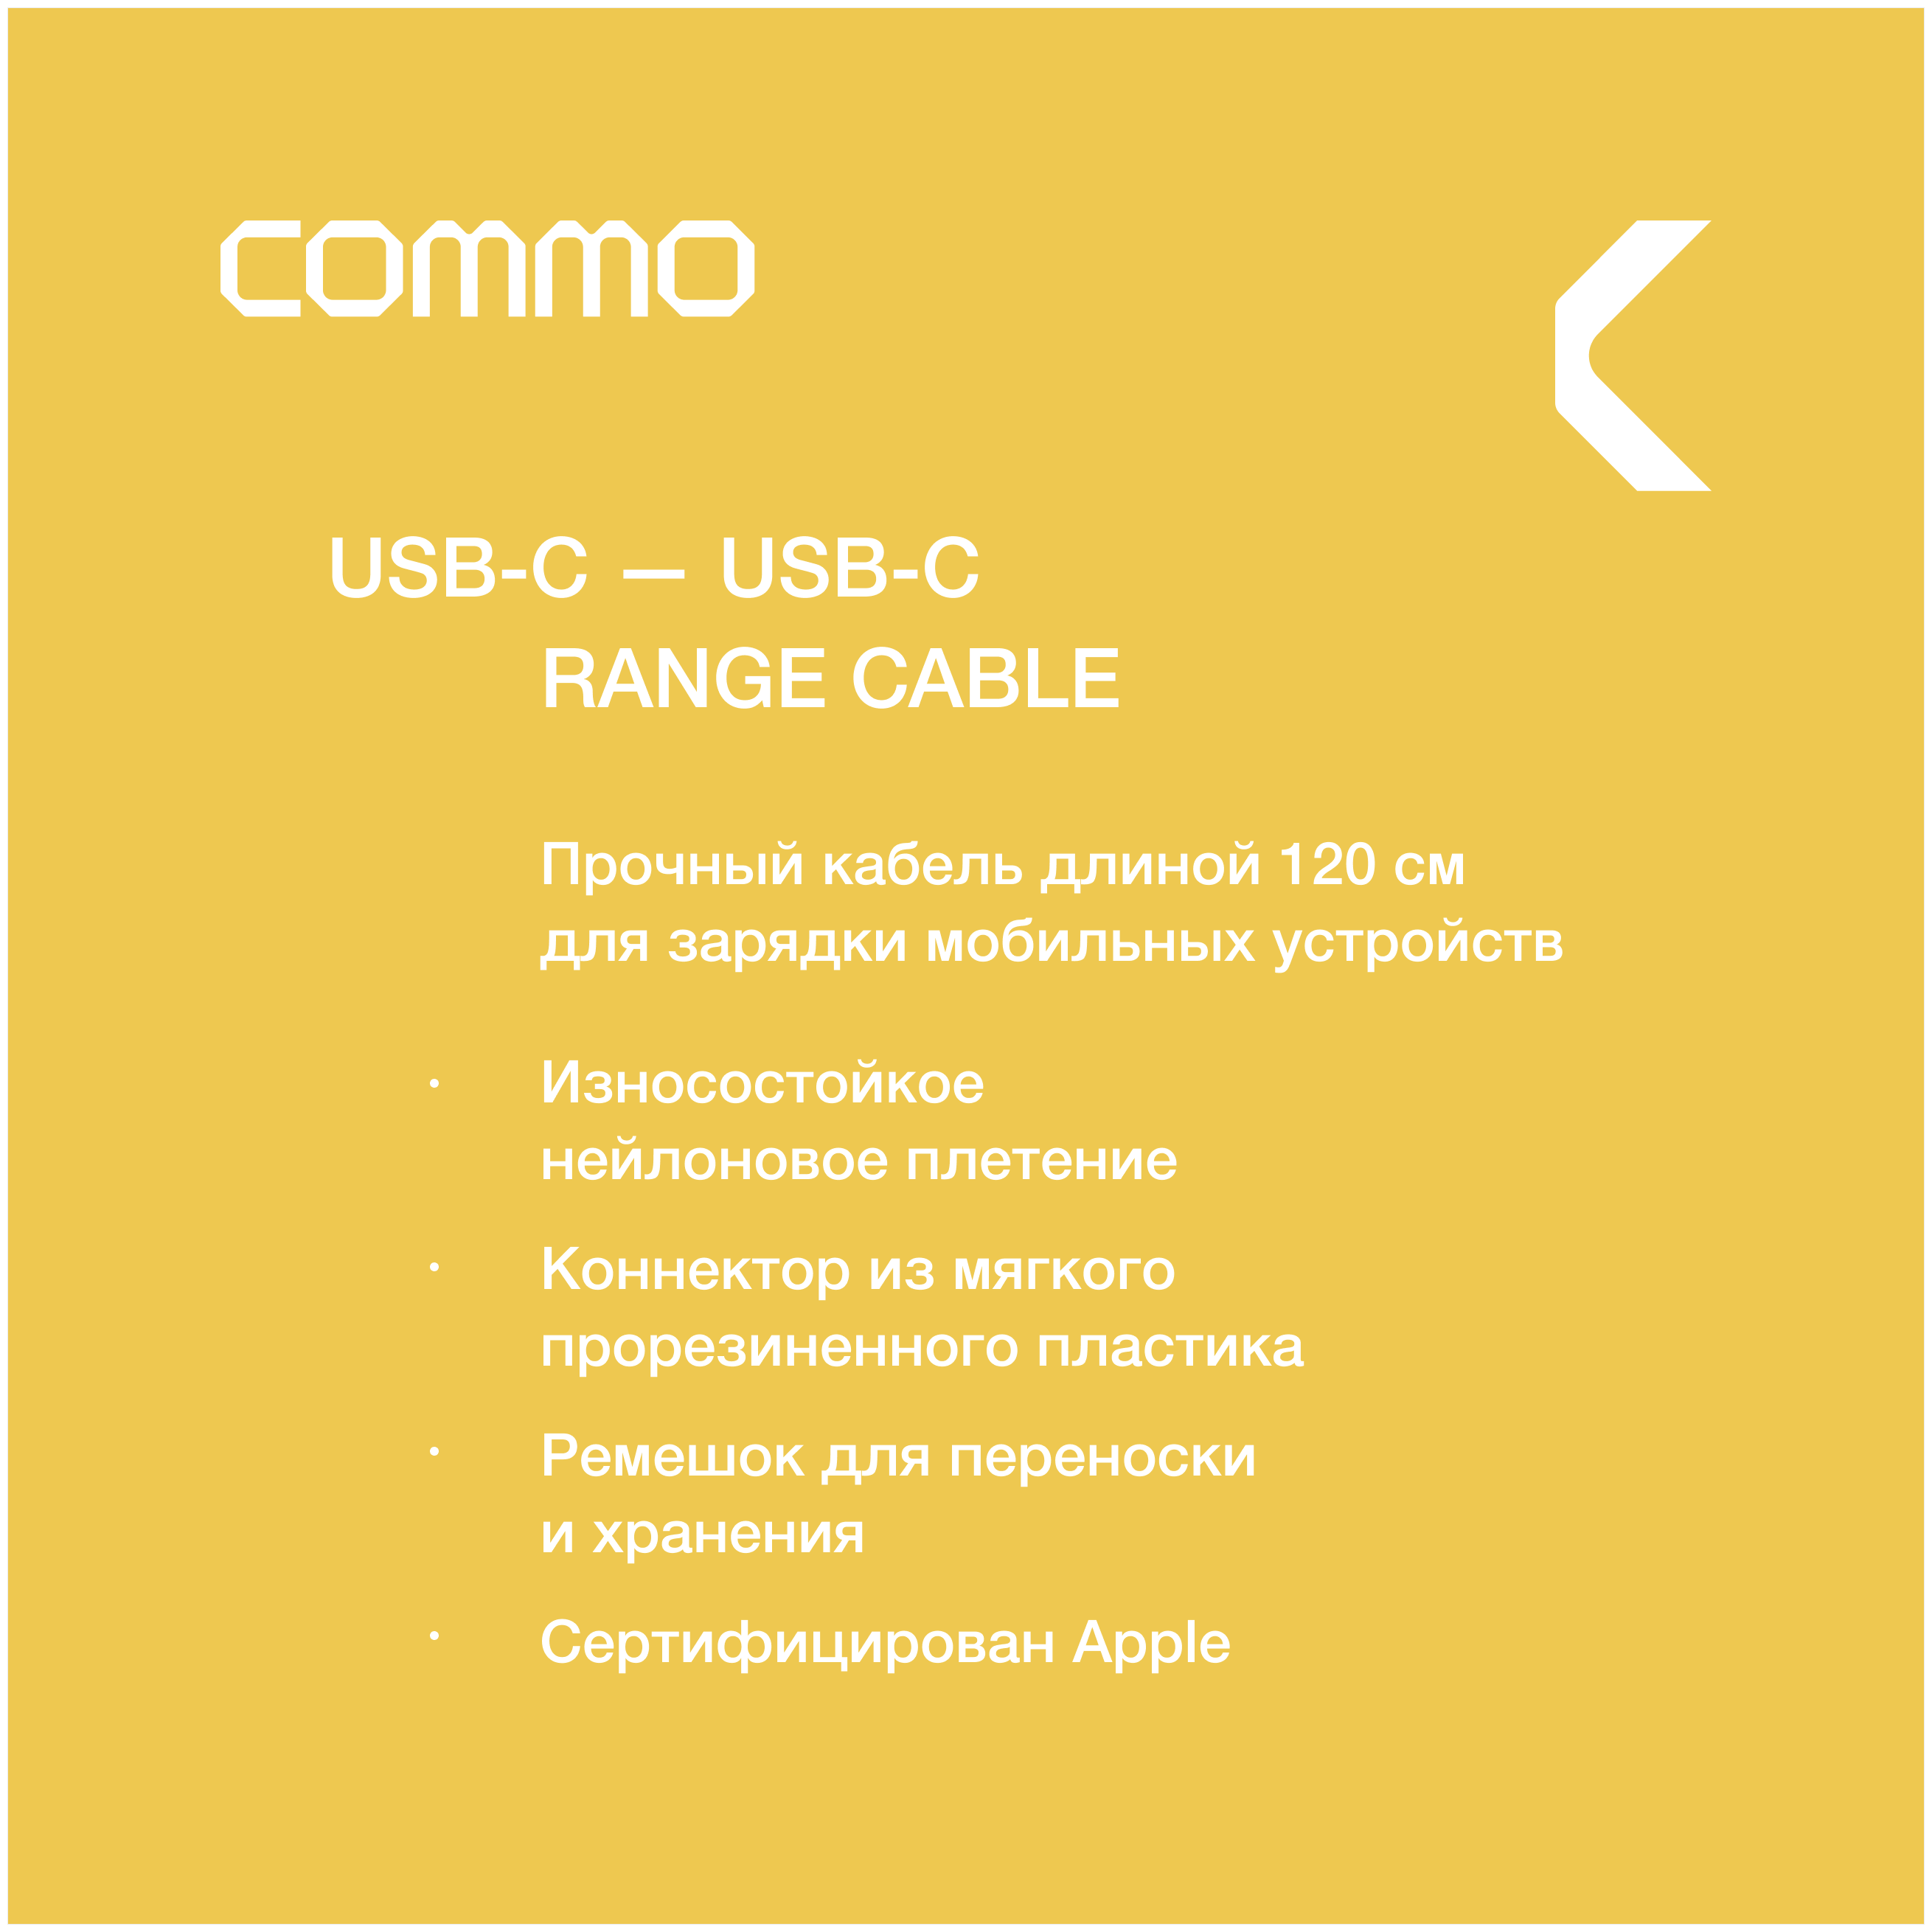 Кабель COMMO Range Cable USB-C — USB-C, 1.2 м, Light Gray